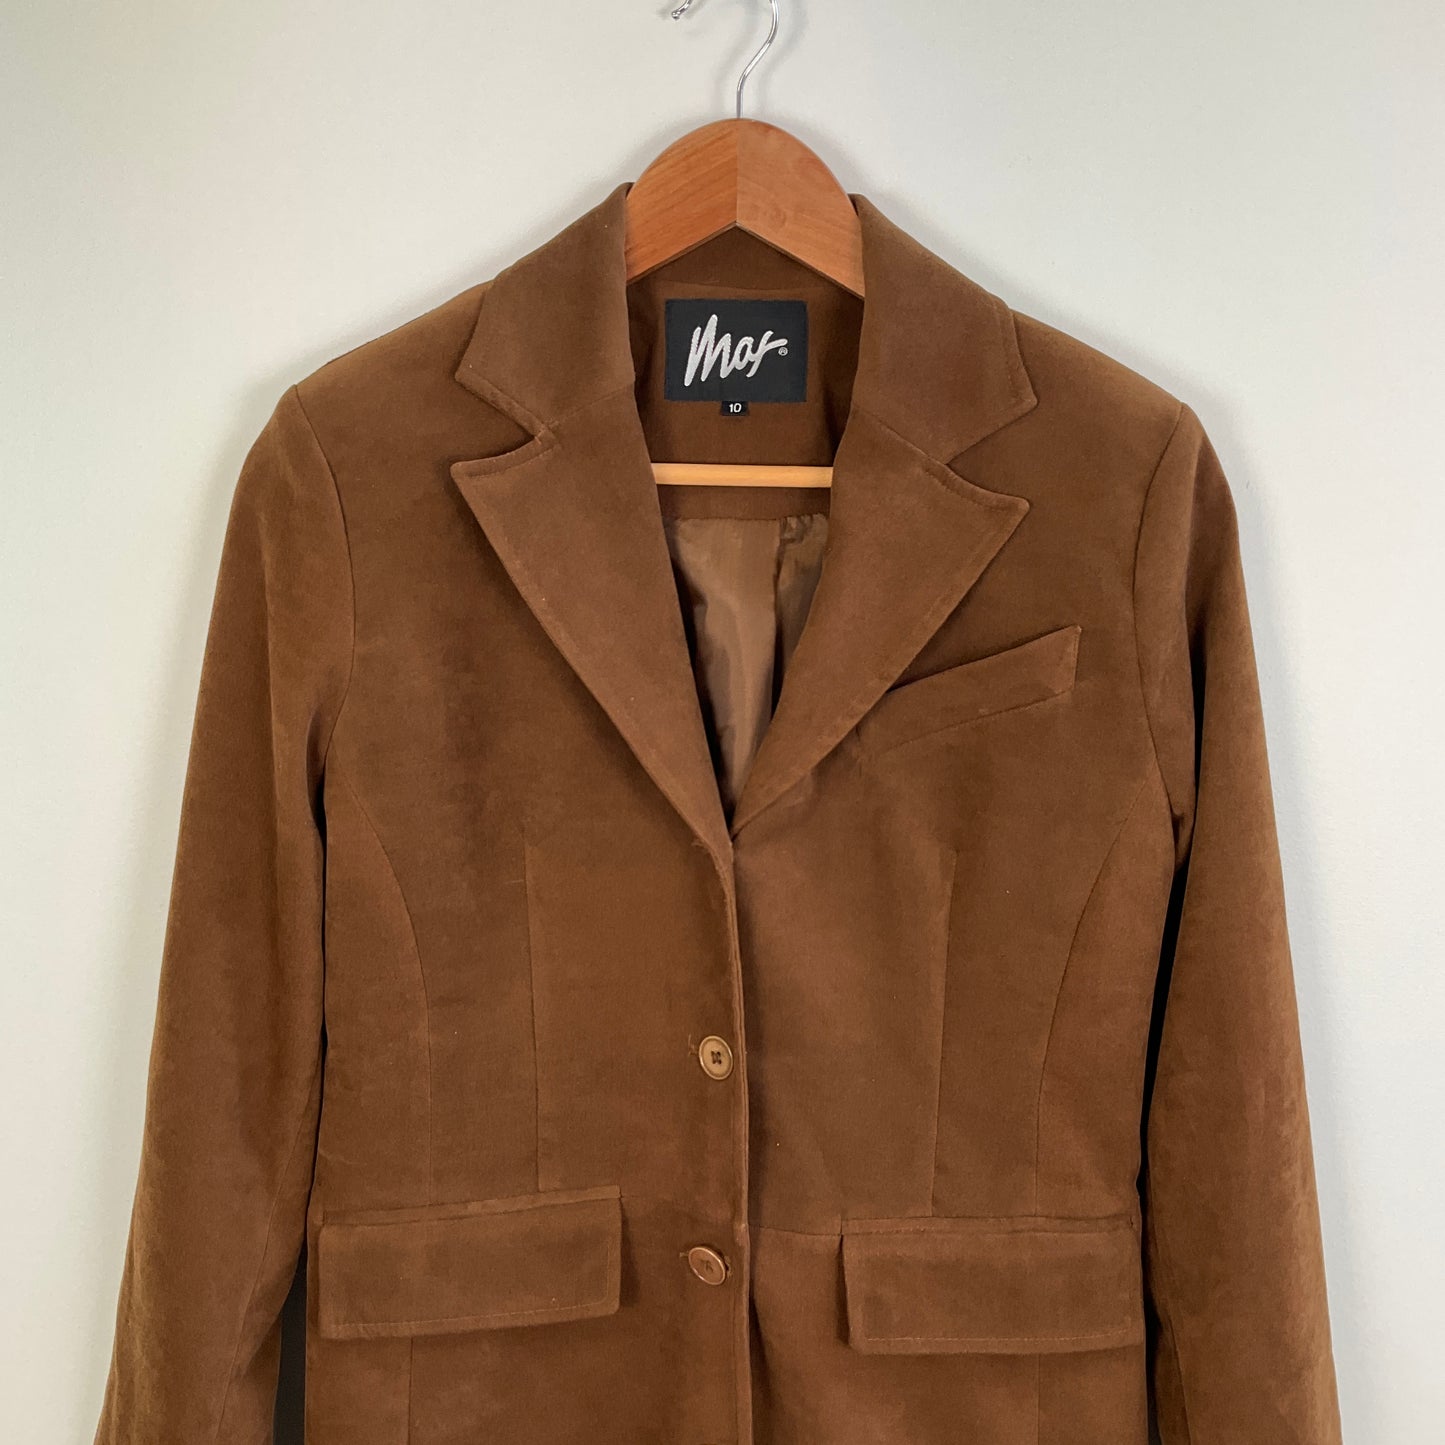 Max - Tan Coat